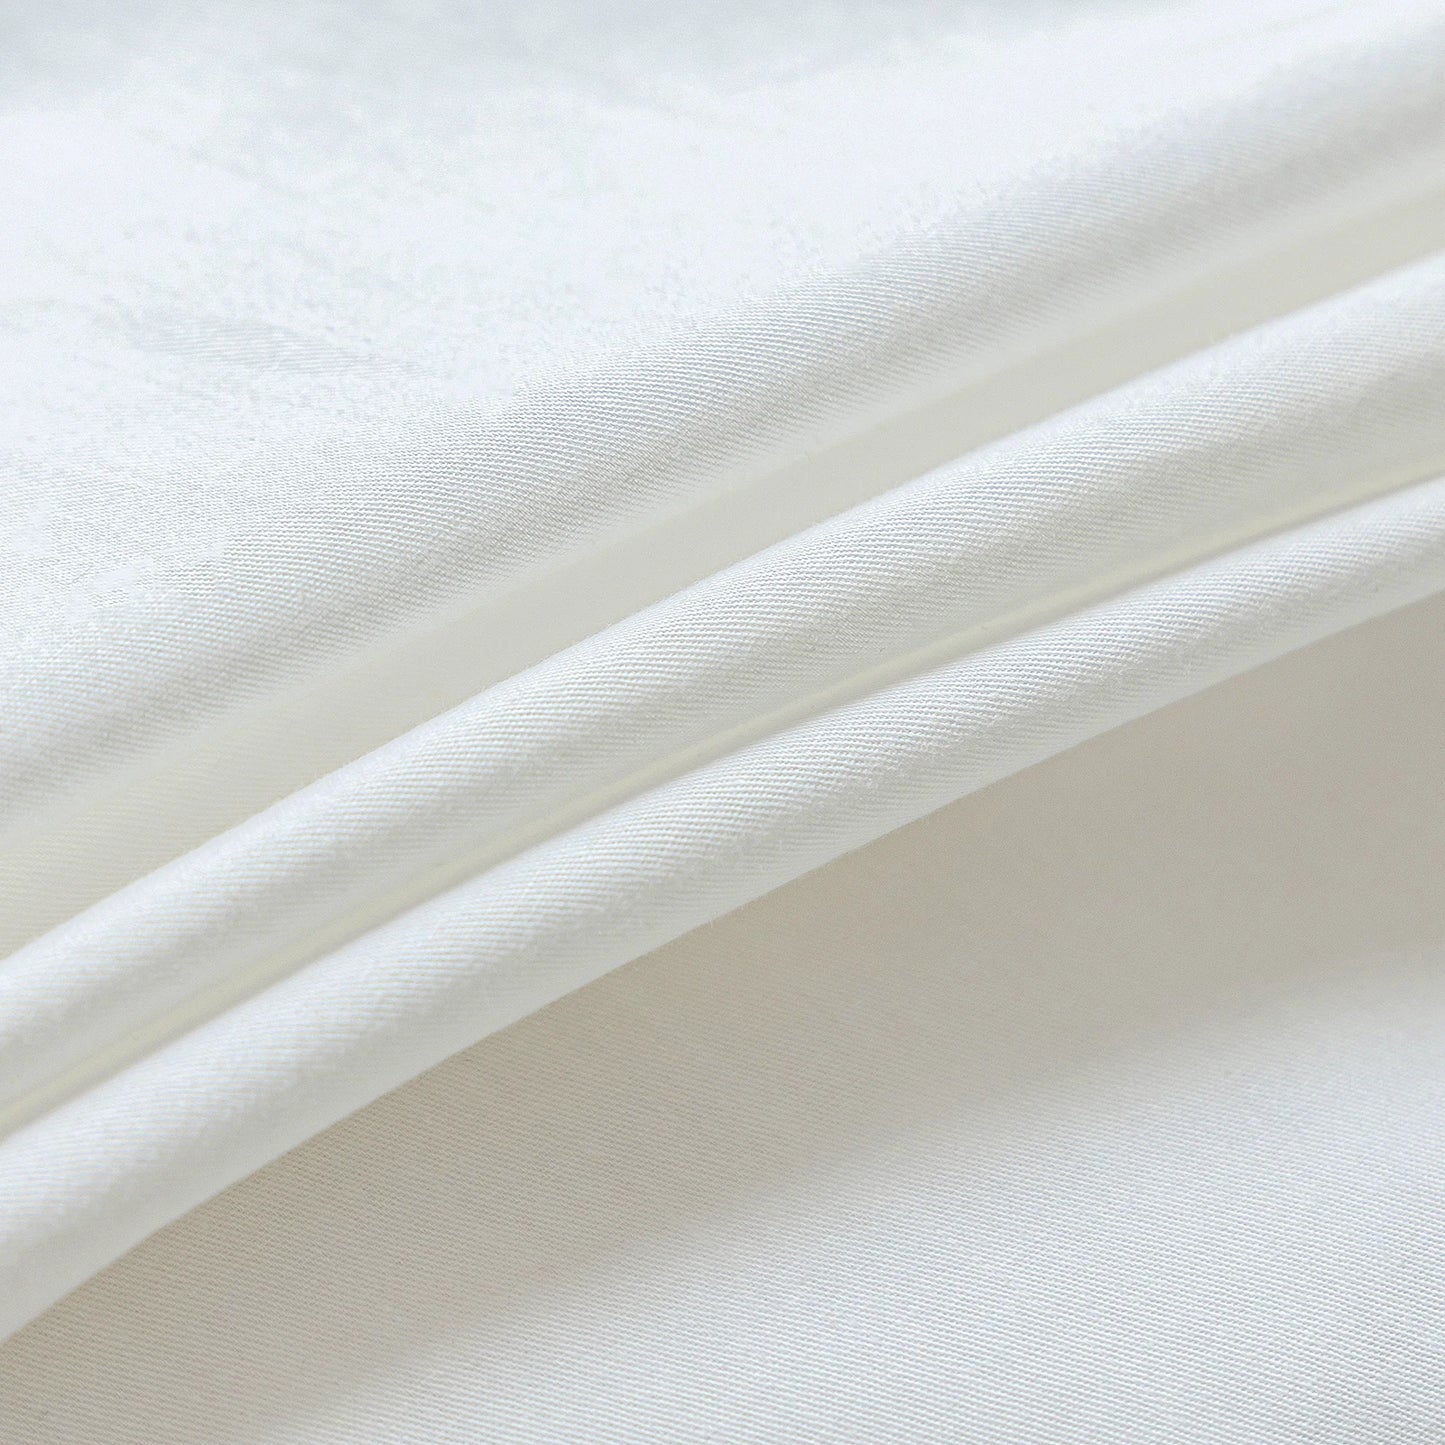 2/3ks 100% Cotton Cover Cover Sada, Kvalitný textilný počet textilných látok, dvojitá sada prikrývok s jedným kráľom Queen Cotton